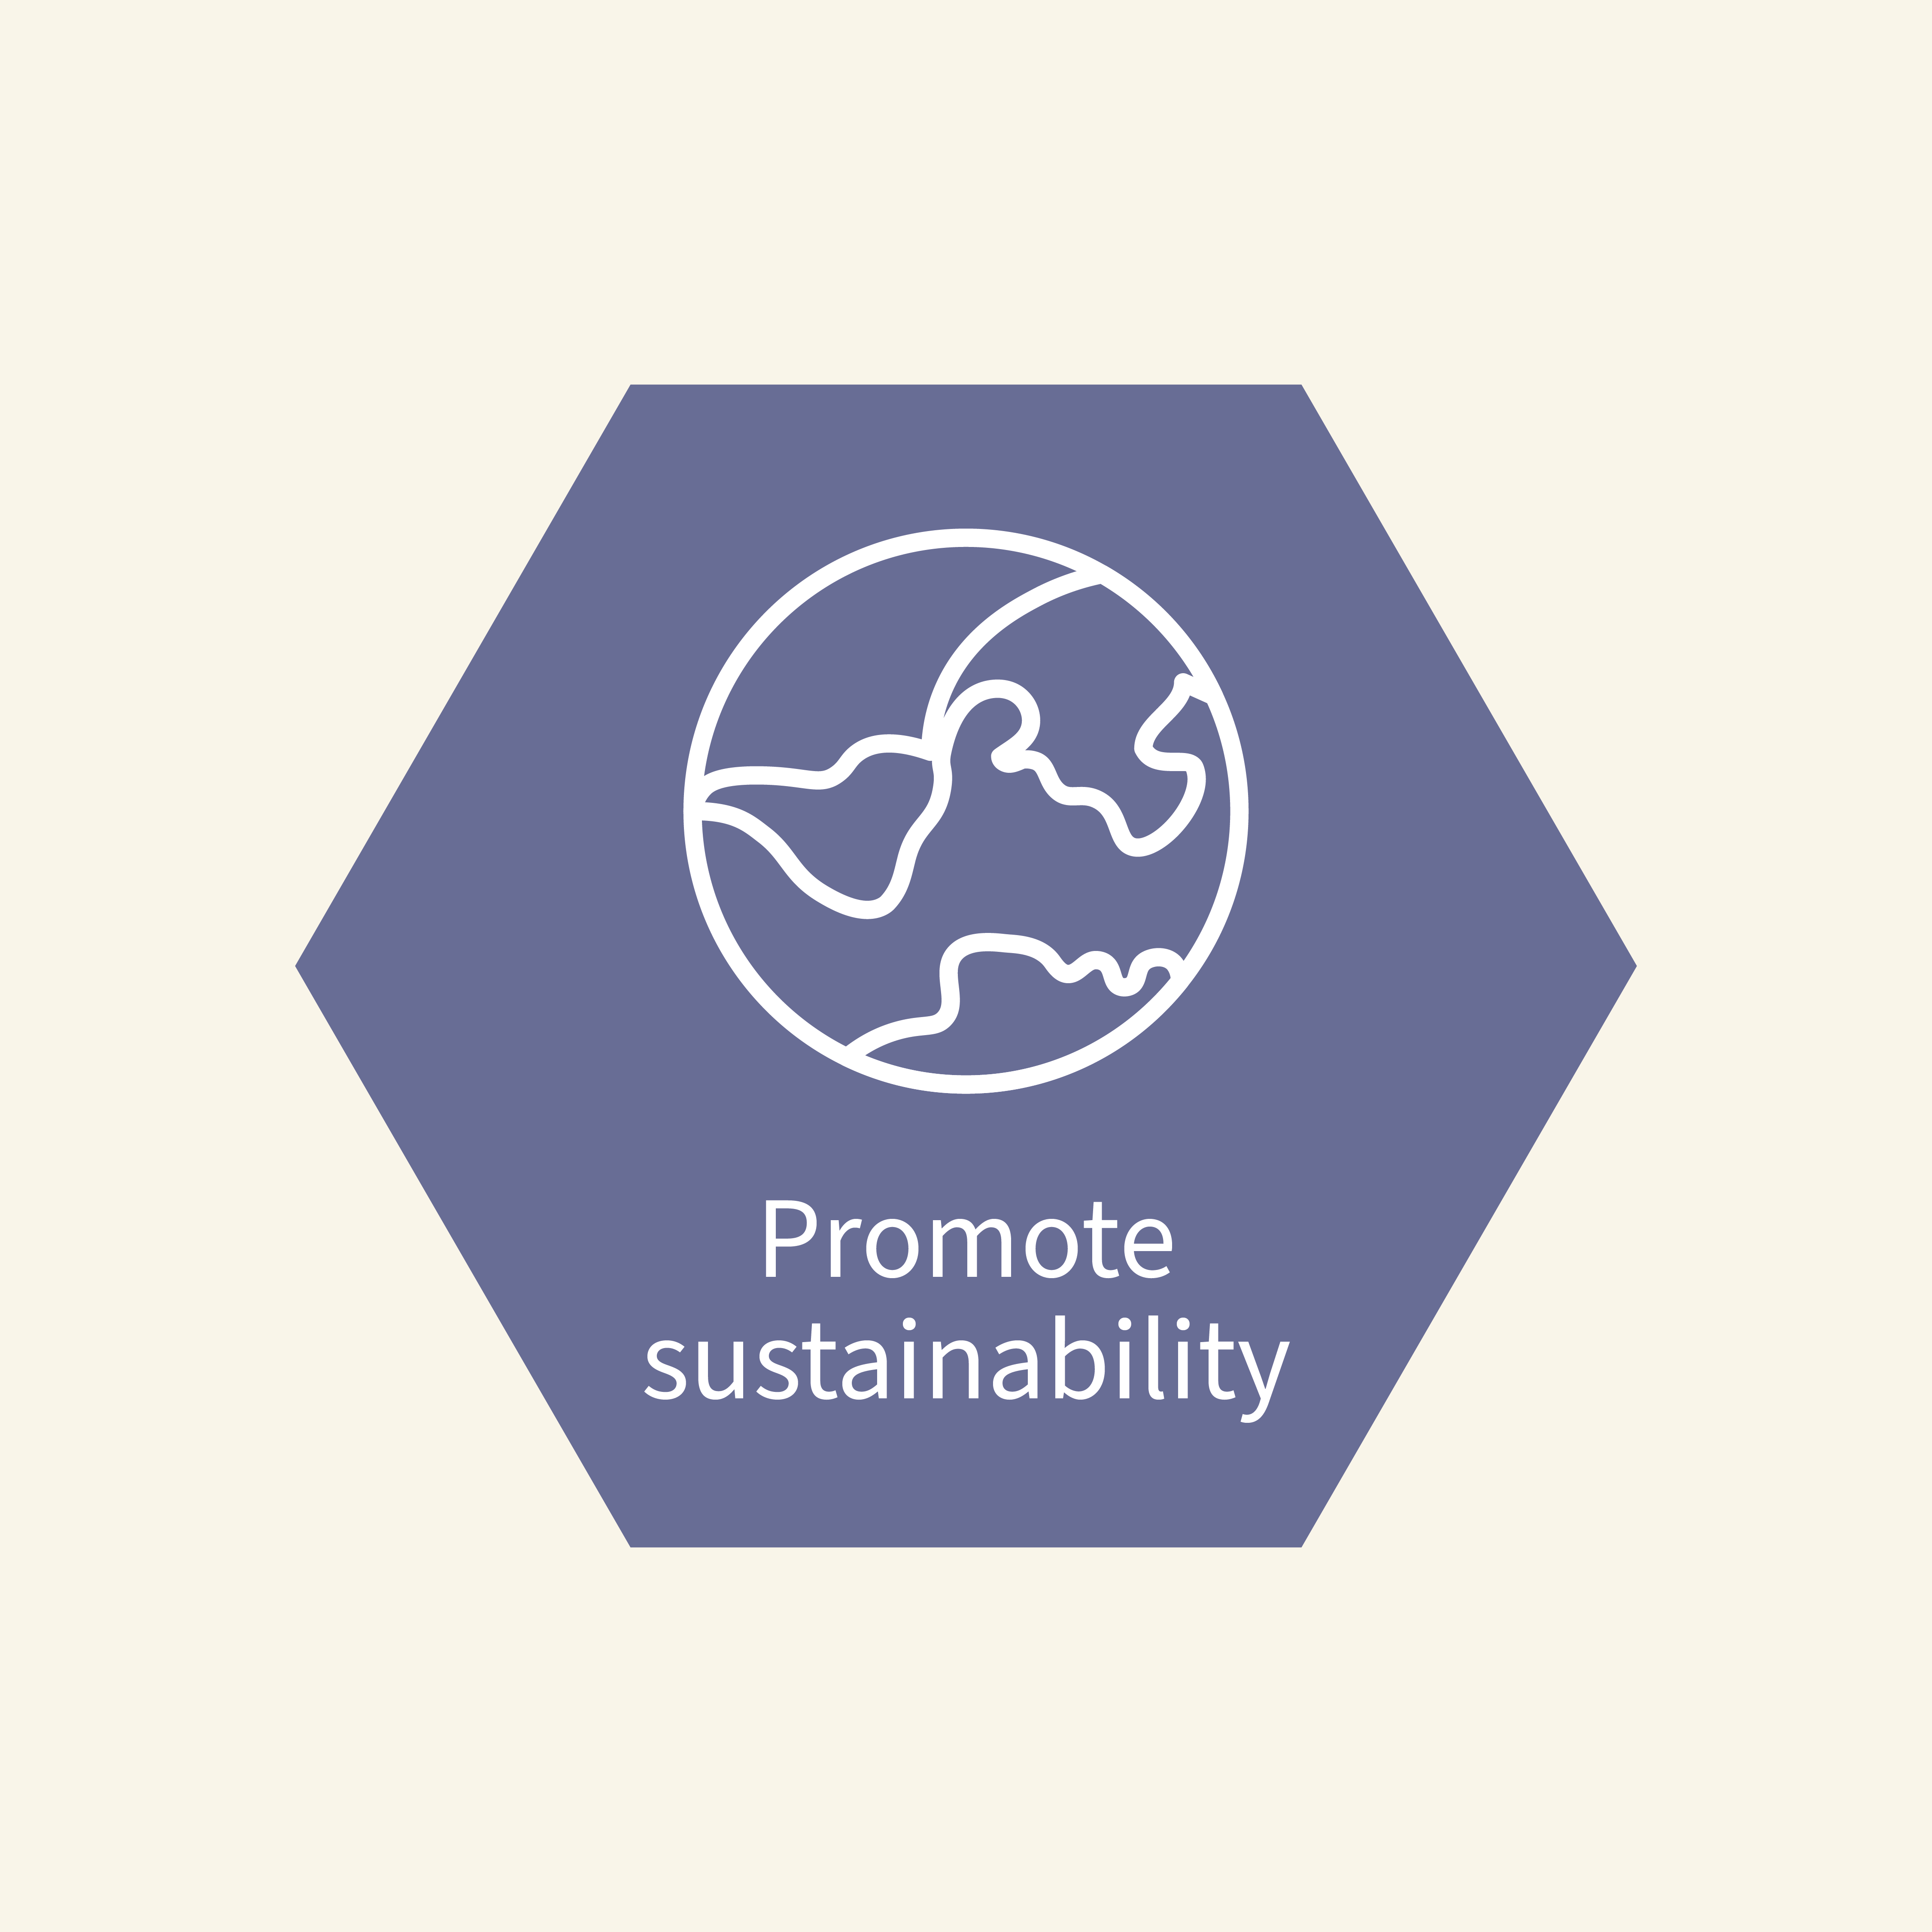 Promote sustainability